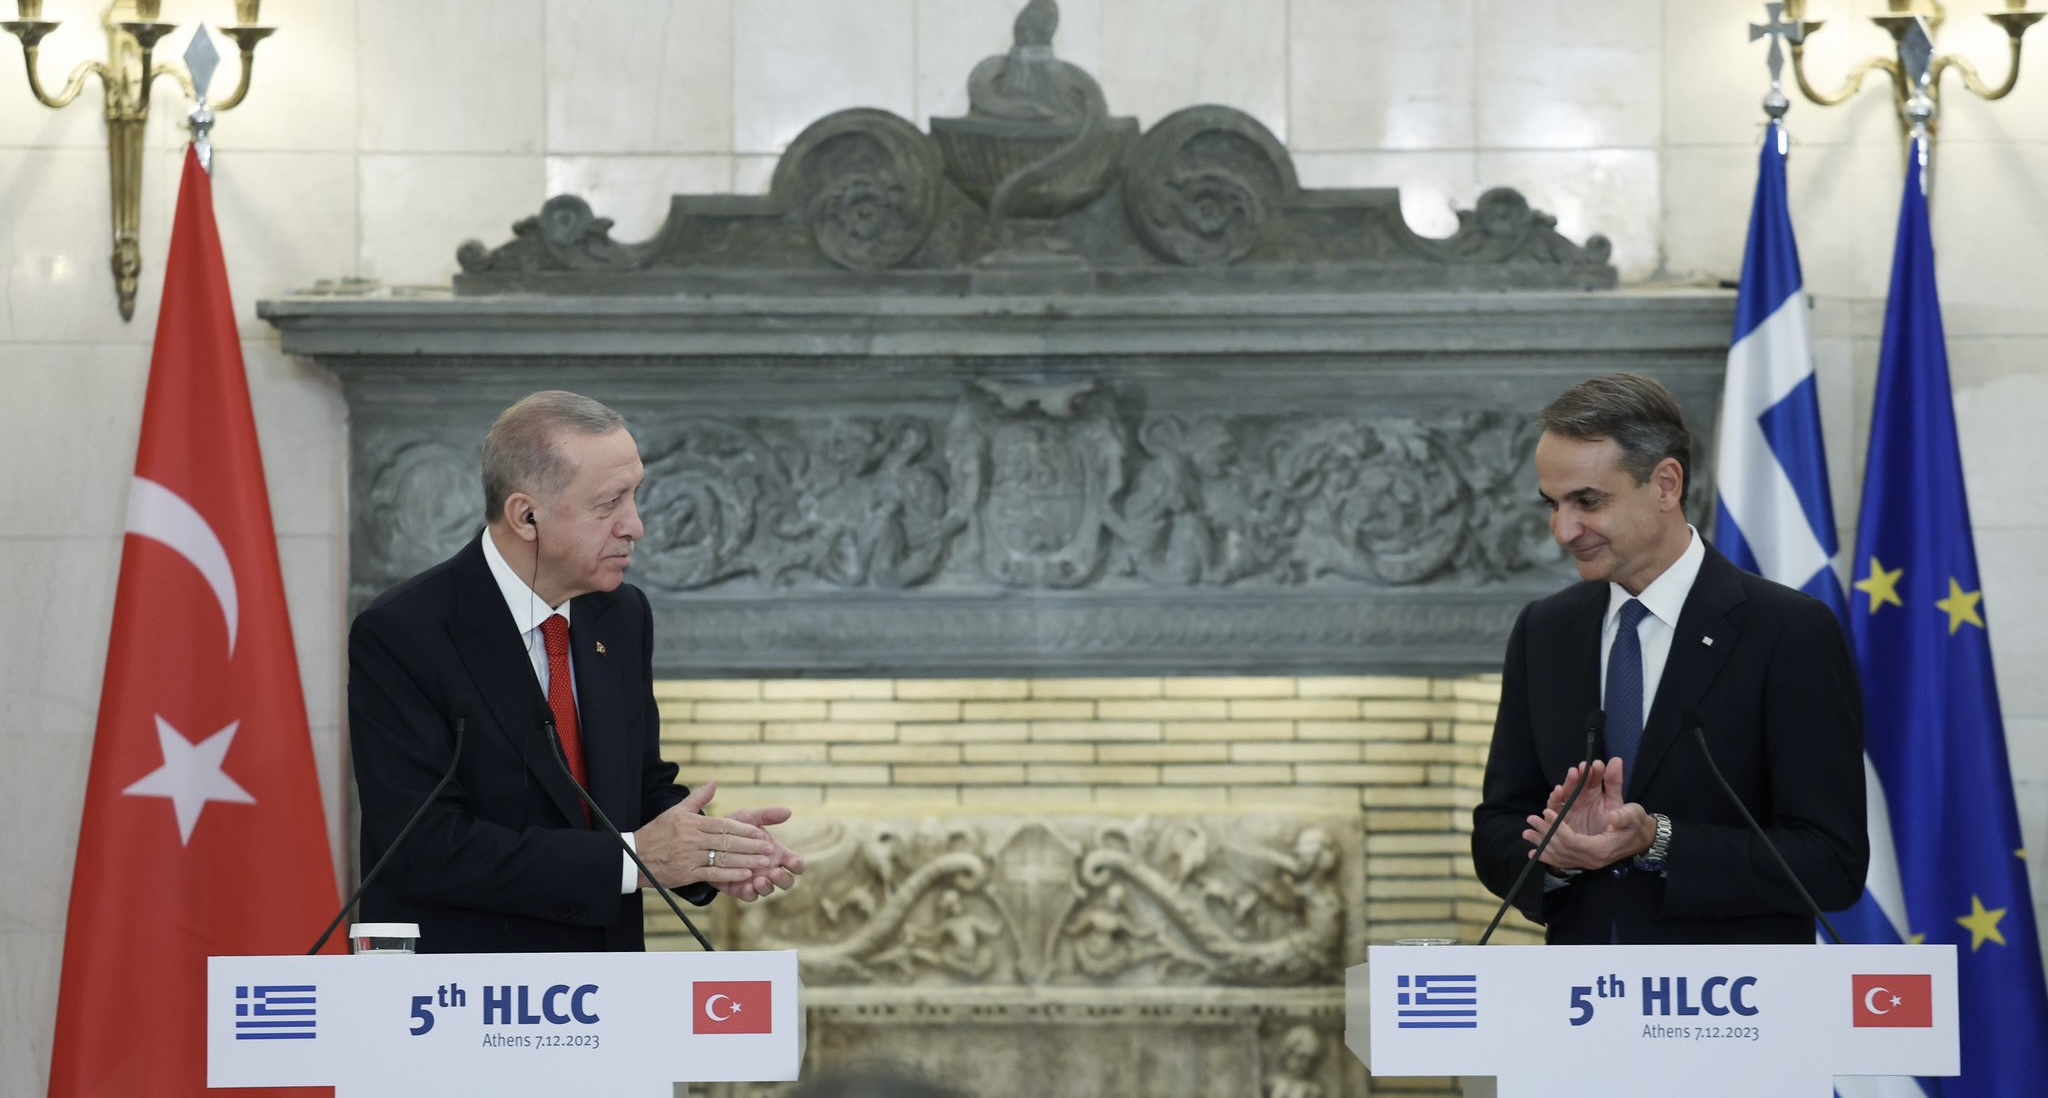 Мицотакис обсудил с Эрдоганом ситуацию на Ближнем Востоке, Украине, Кавказе, а также Кипр